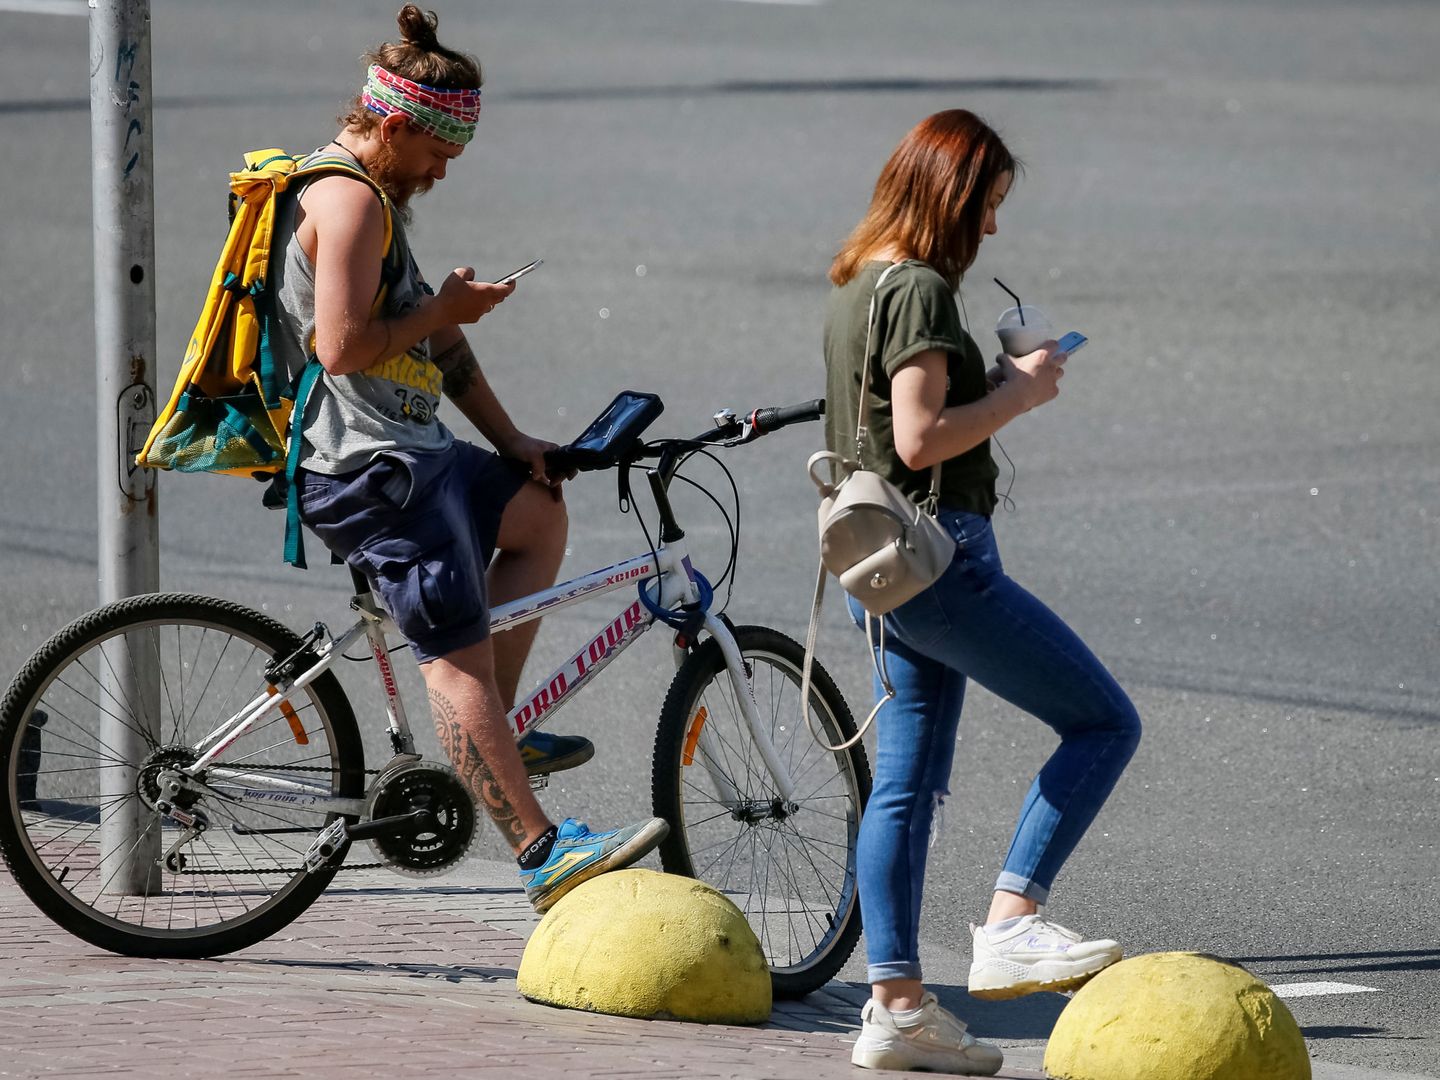 Ver el móvil en la calle se ha convertido en una costumbre en los últimos años. (Reuters)